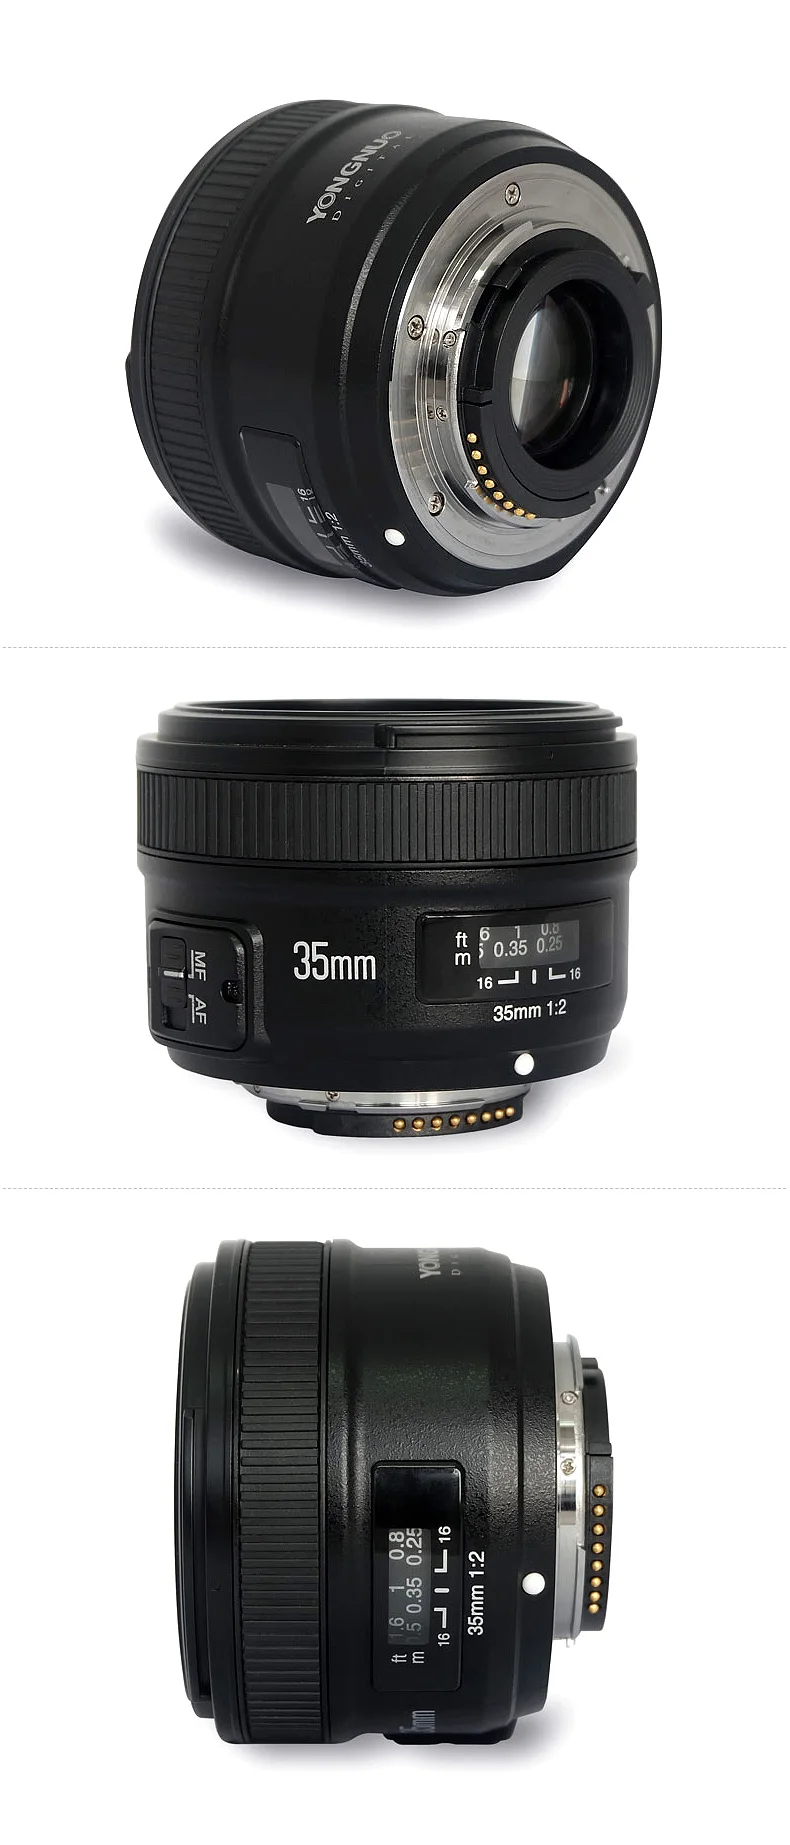 Объектив Yongnuo 35 мм YN35mm F2 1:2 широкоугольный объектив с большой апертурой с фиксированным автофокусом для камер Canon EOS EF или камер Nikon AF